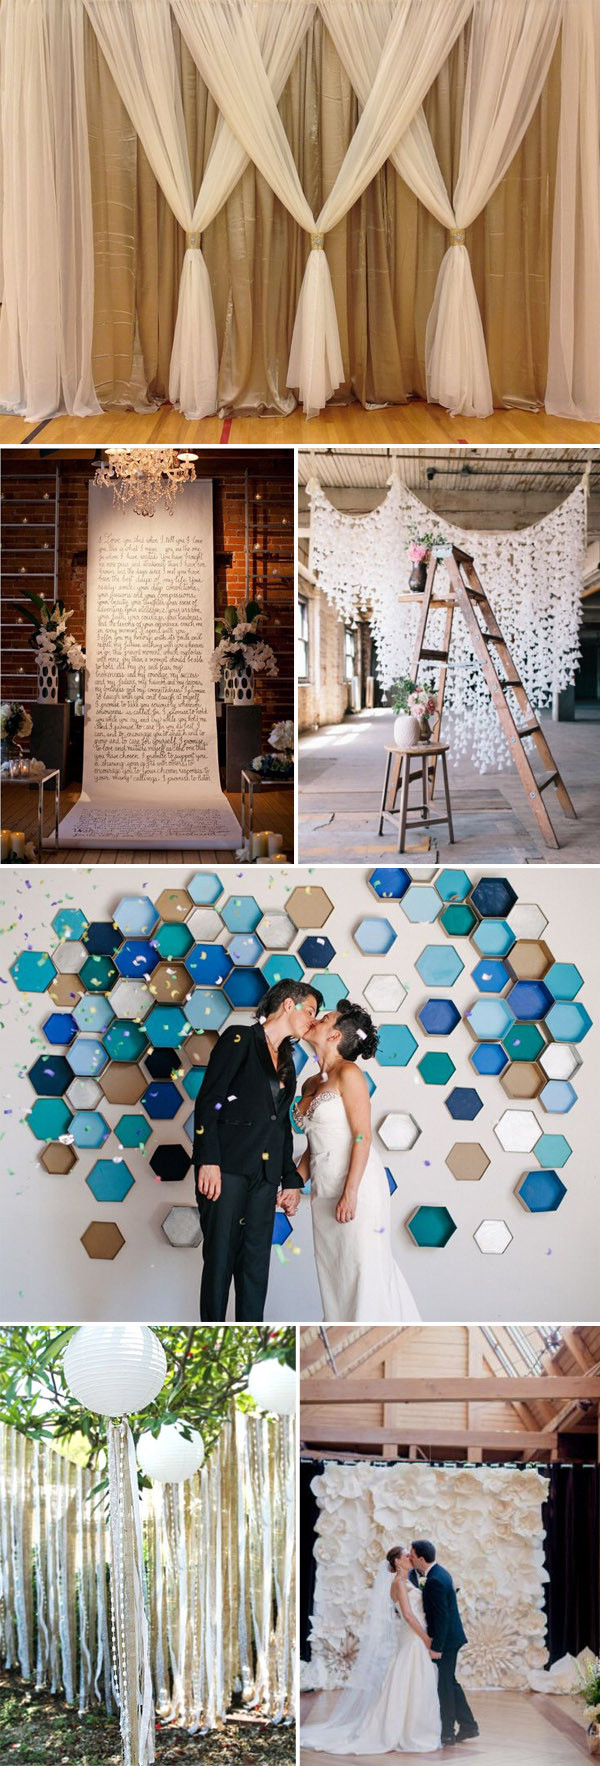 DIY Backdrop Wedding
 Top 20 Unique Backdrops For Wedding Ceremony Ideas